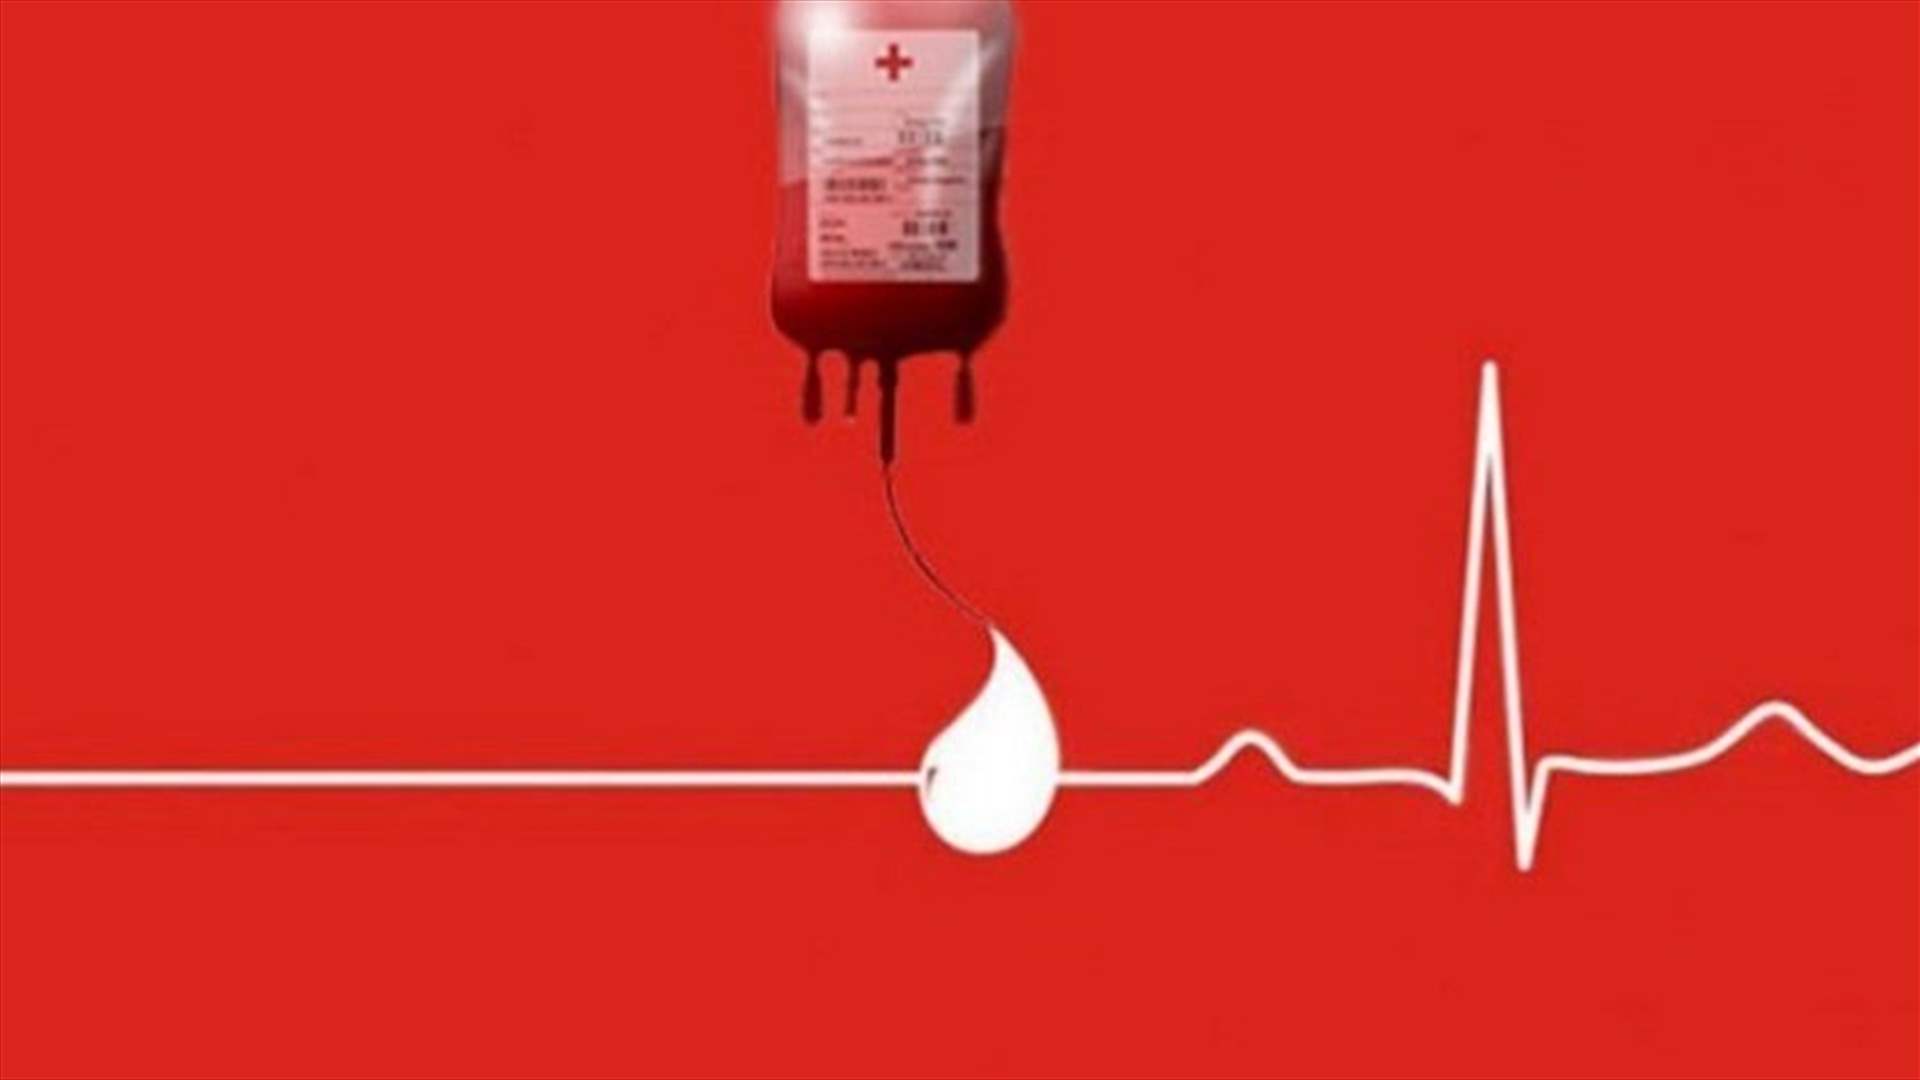 مريض بحاجة الى بلاكيت دم من فئة A+ في مستشفى الجعيتاوي - الاشرفية. للتبرع: 70392430